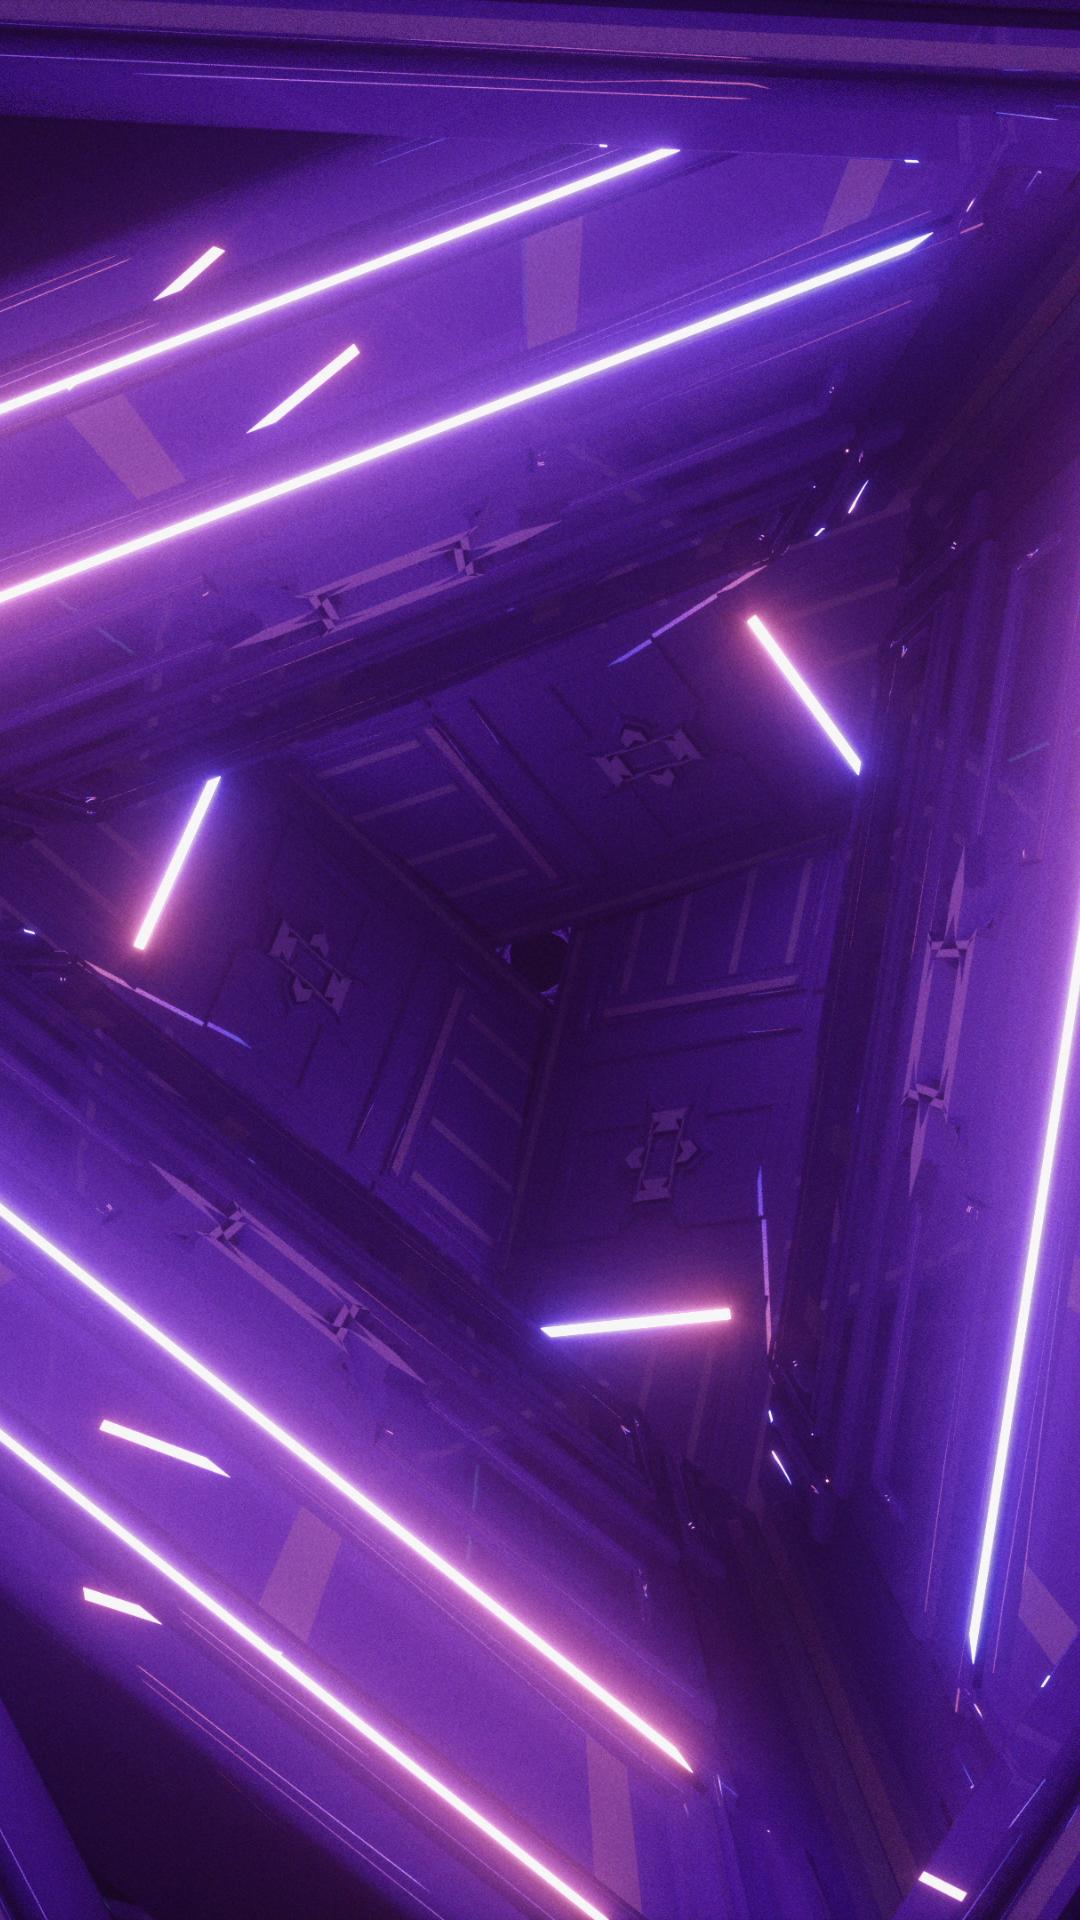 A purple neon triangle in a dark room - Dark purple